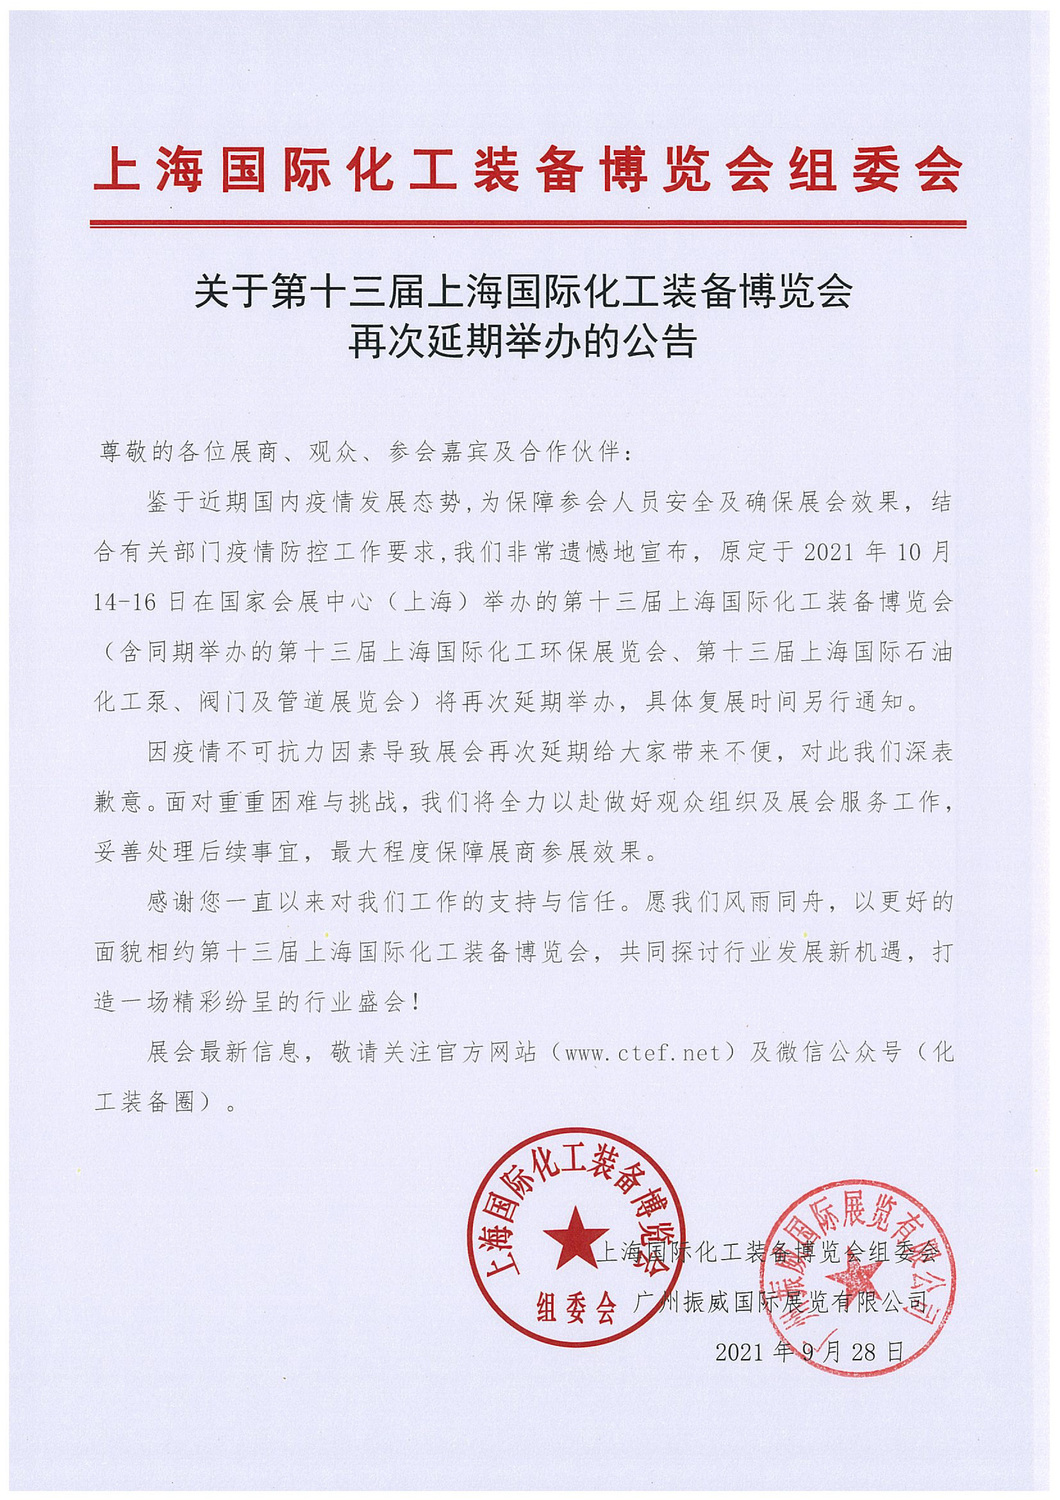 上海化工装备展再次延期公告.jpg